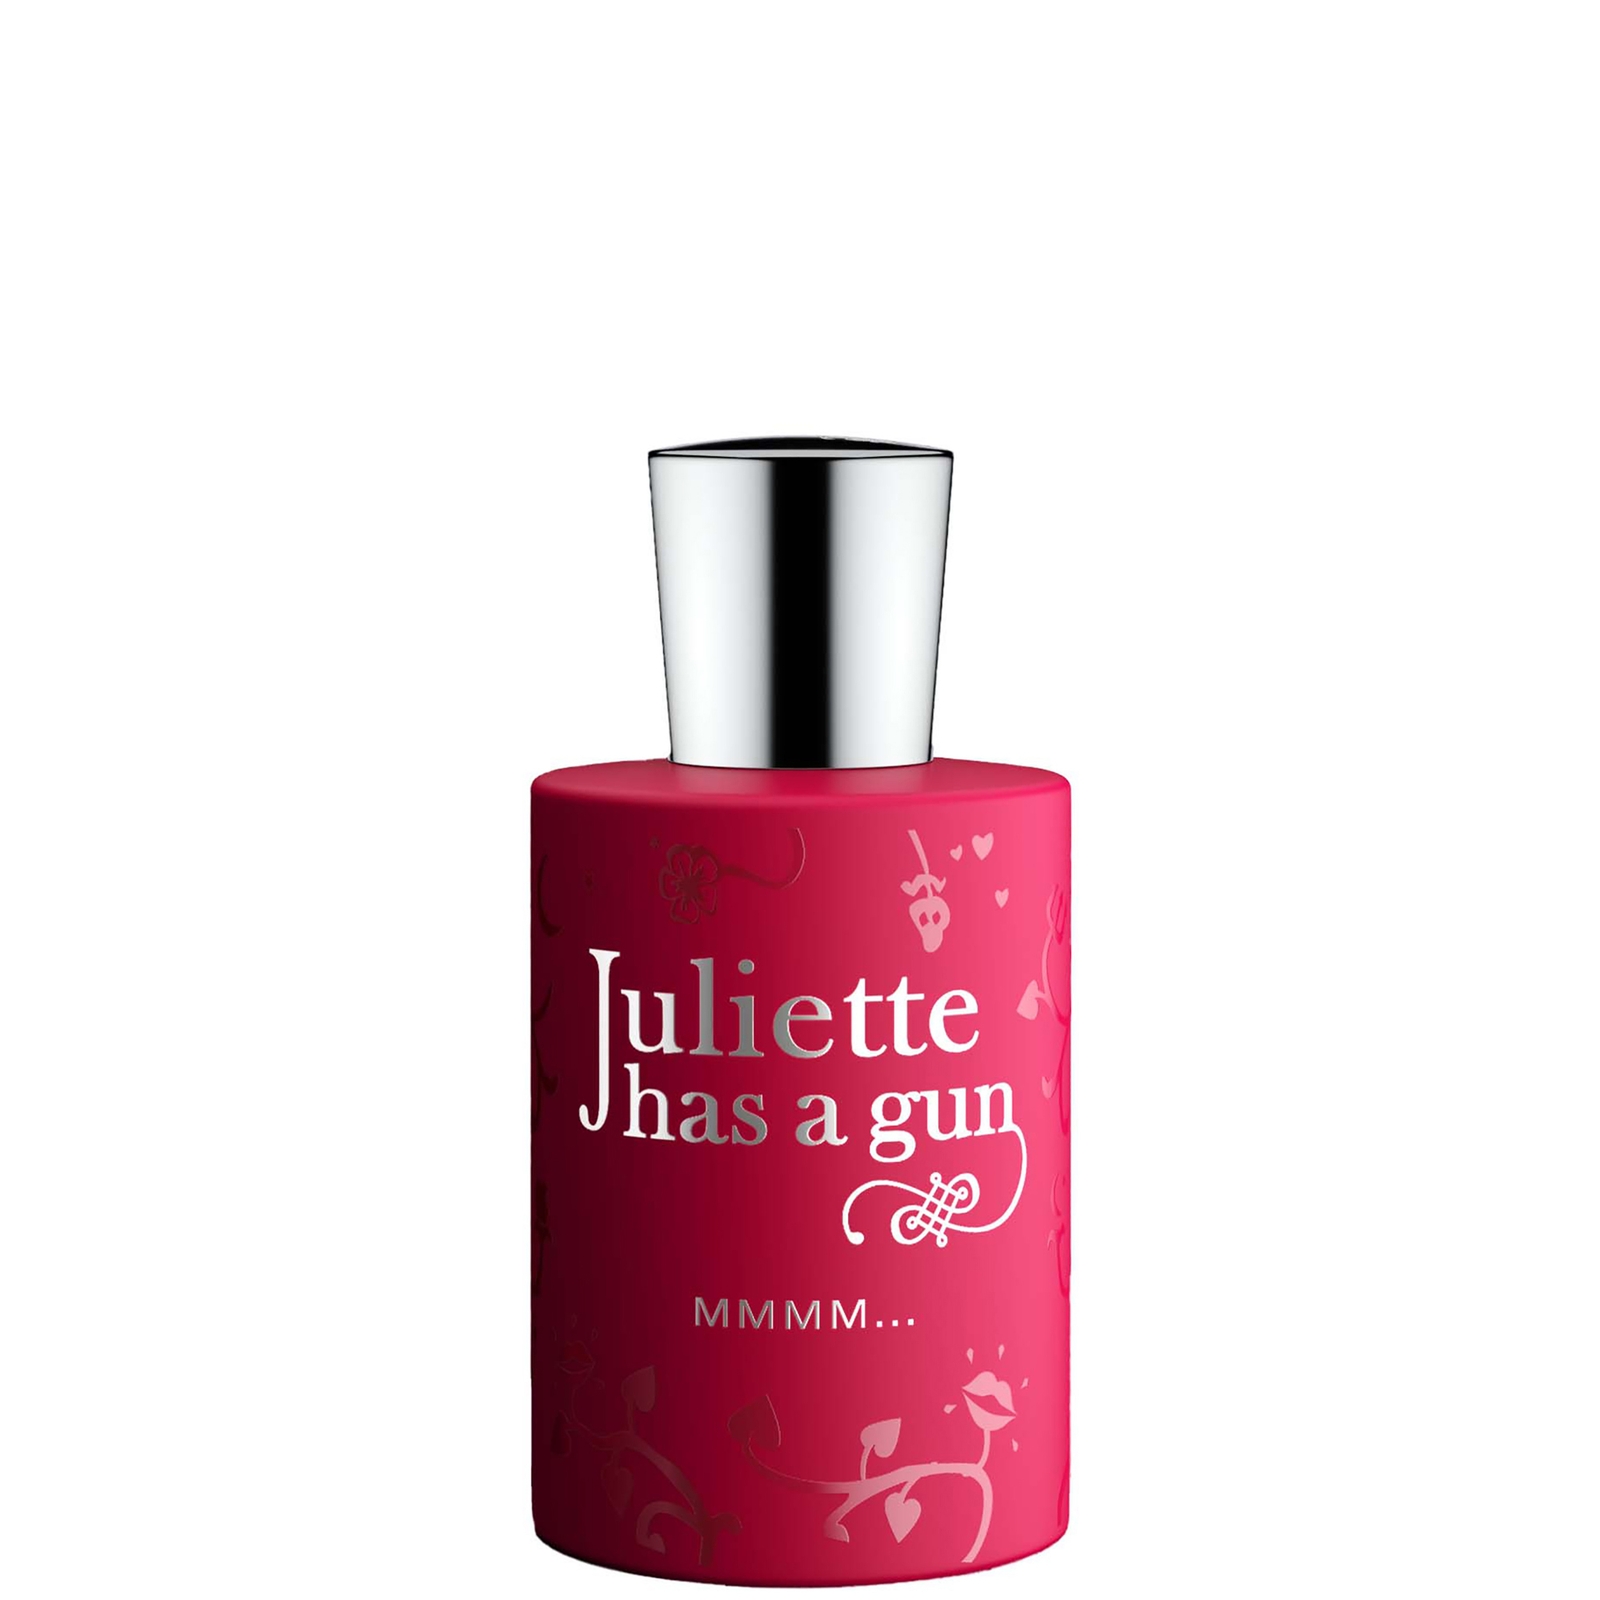 Photos - Women's Fragrance Juliette Has a Gun MMMM... Eau de Parfum 50ml JMM-50 